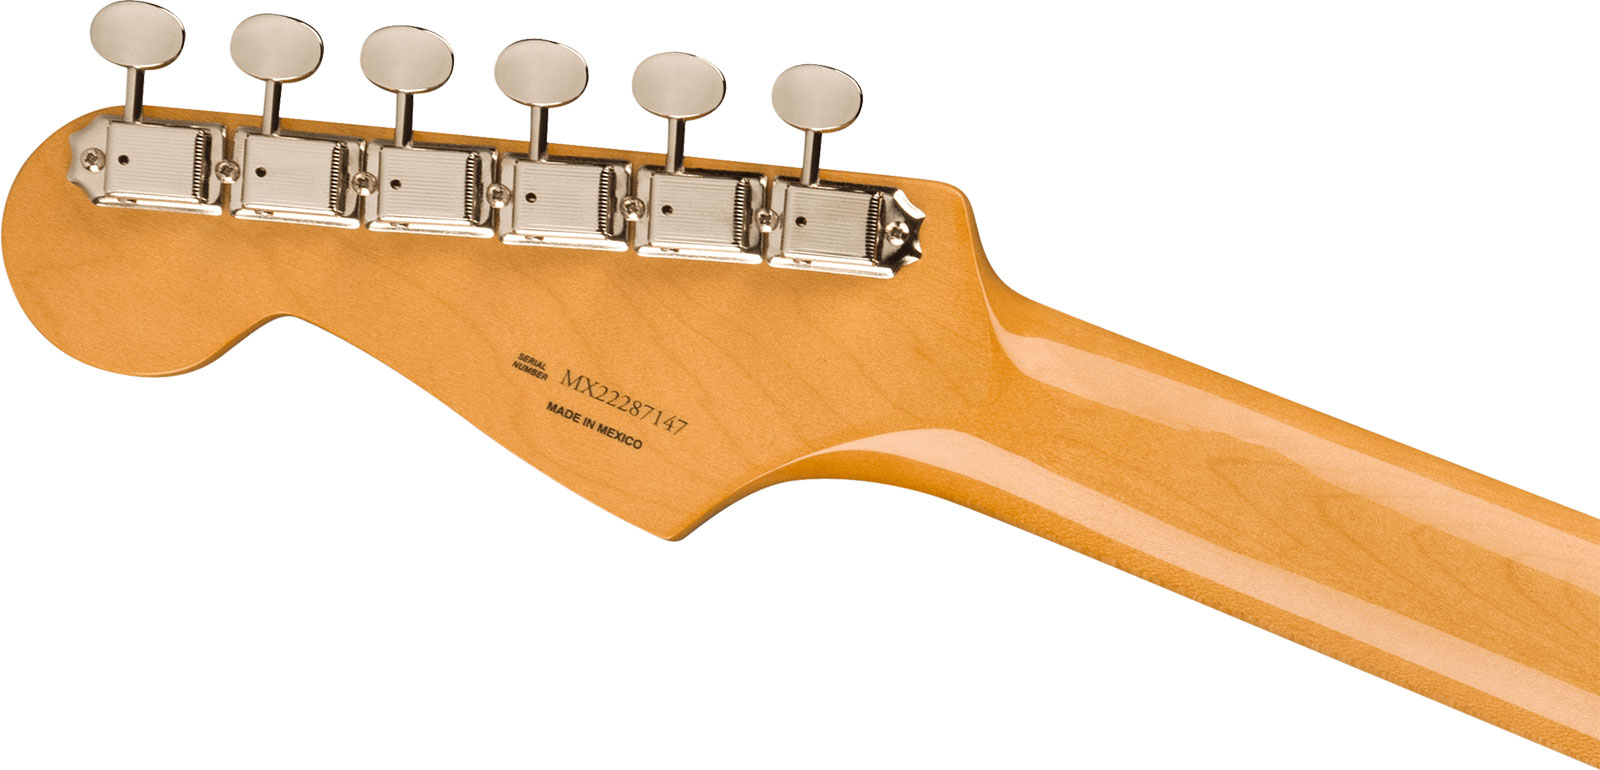 Fender Strat 60s Vintera 2 Mex 3s Trem Rw - Lake Placid Blue - Guitare Électrique Forme Str - Variation 3